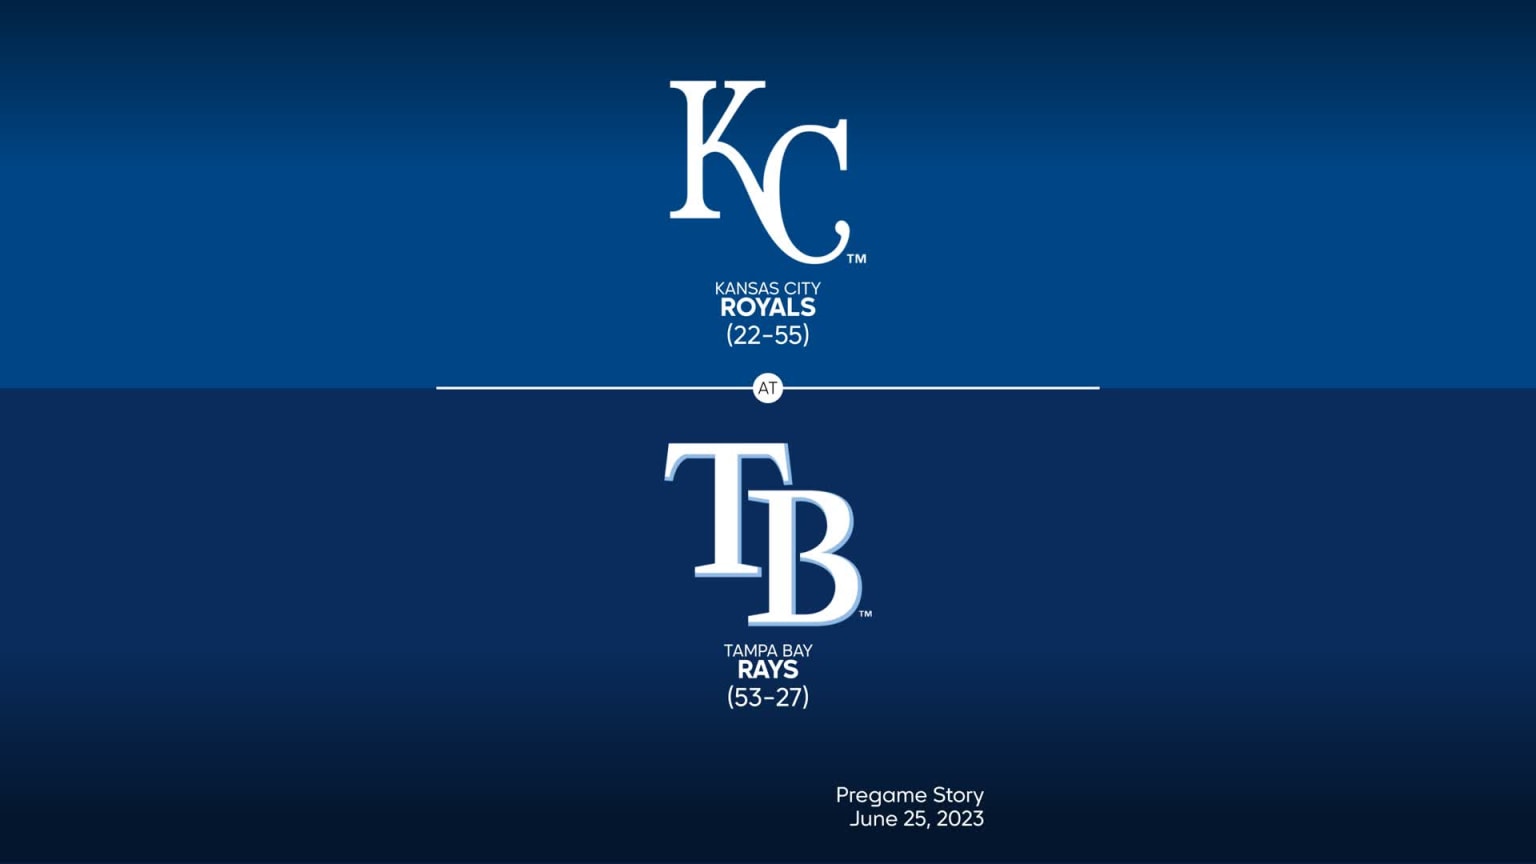 Tampa Bay Rays vs Kansas City Royals June 24, 2023 TODAY